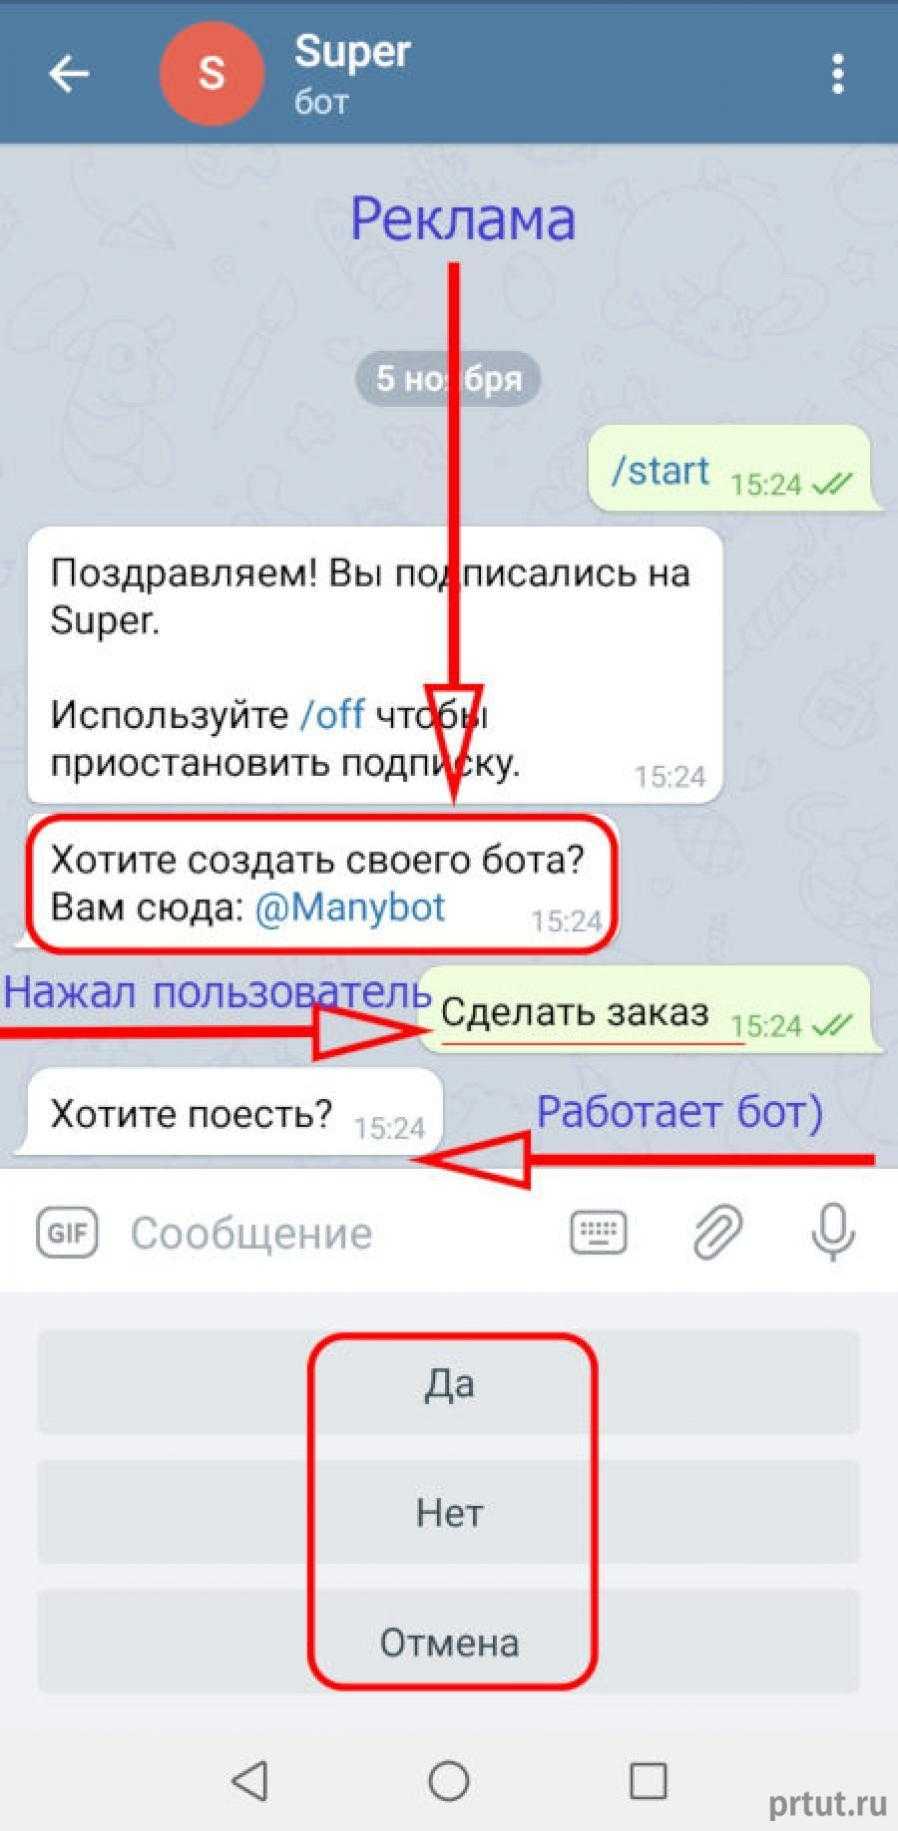 Как сделать телеграмм на русском языке на компе фото 107